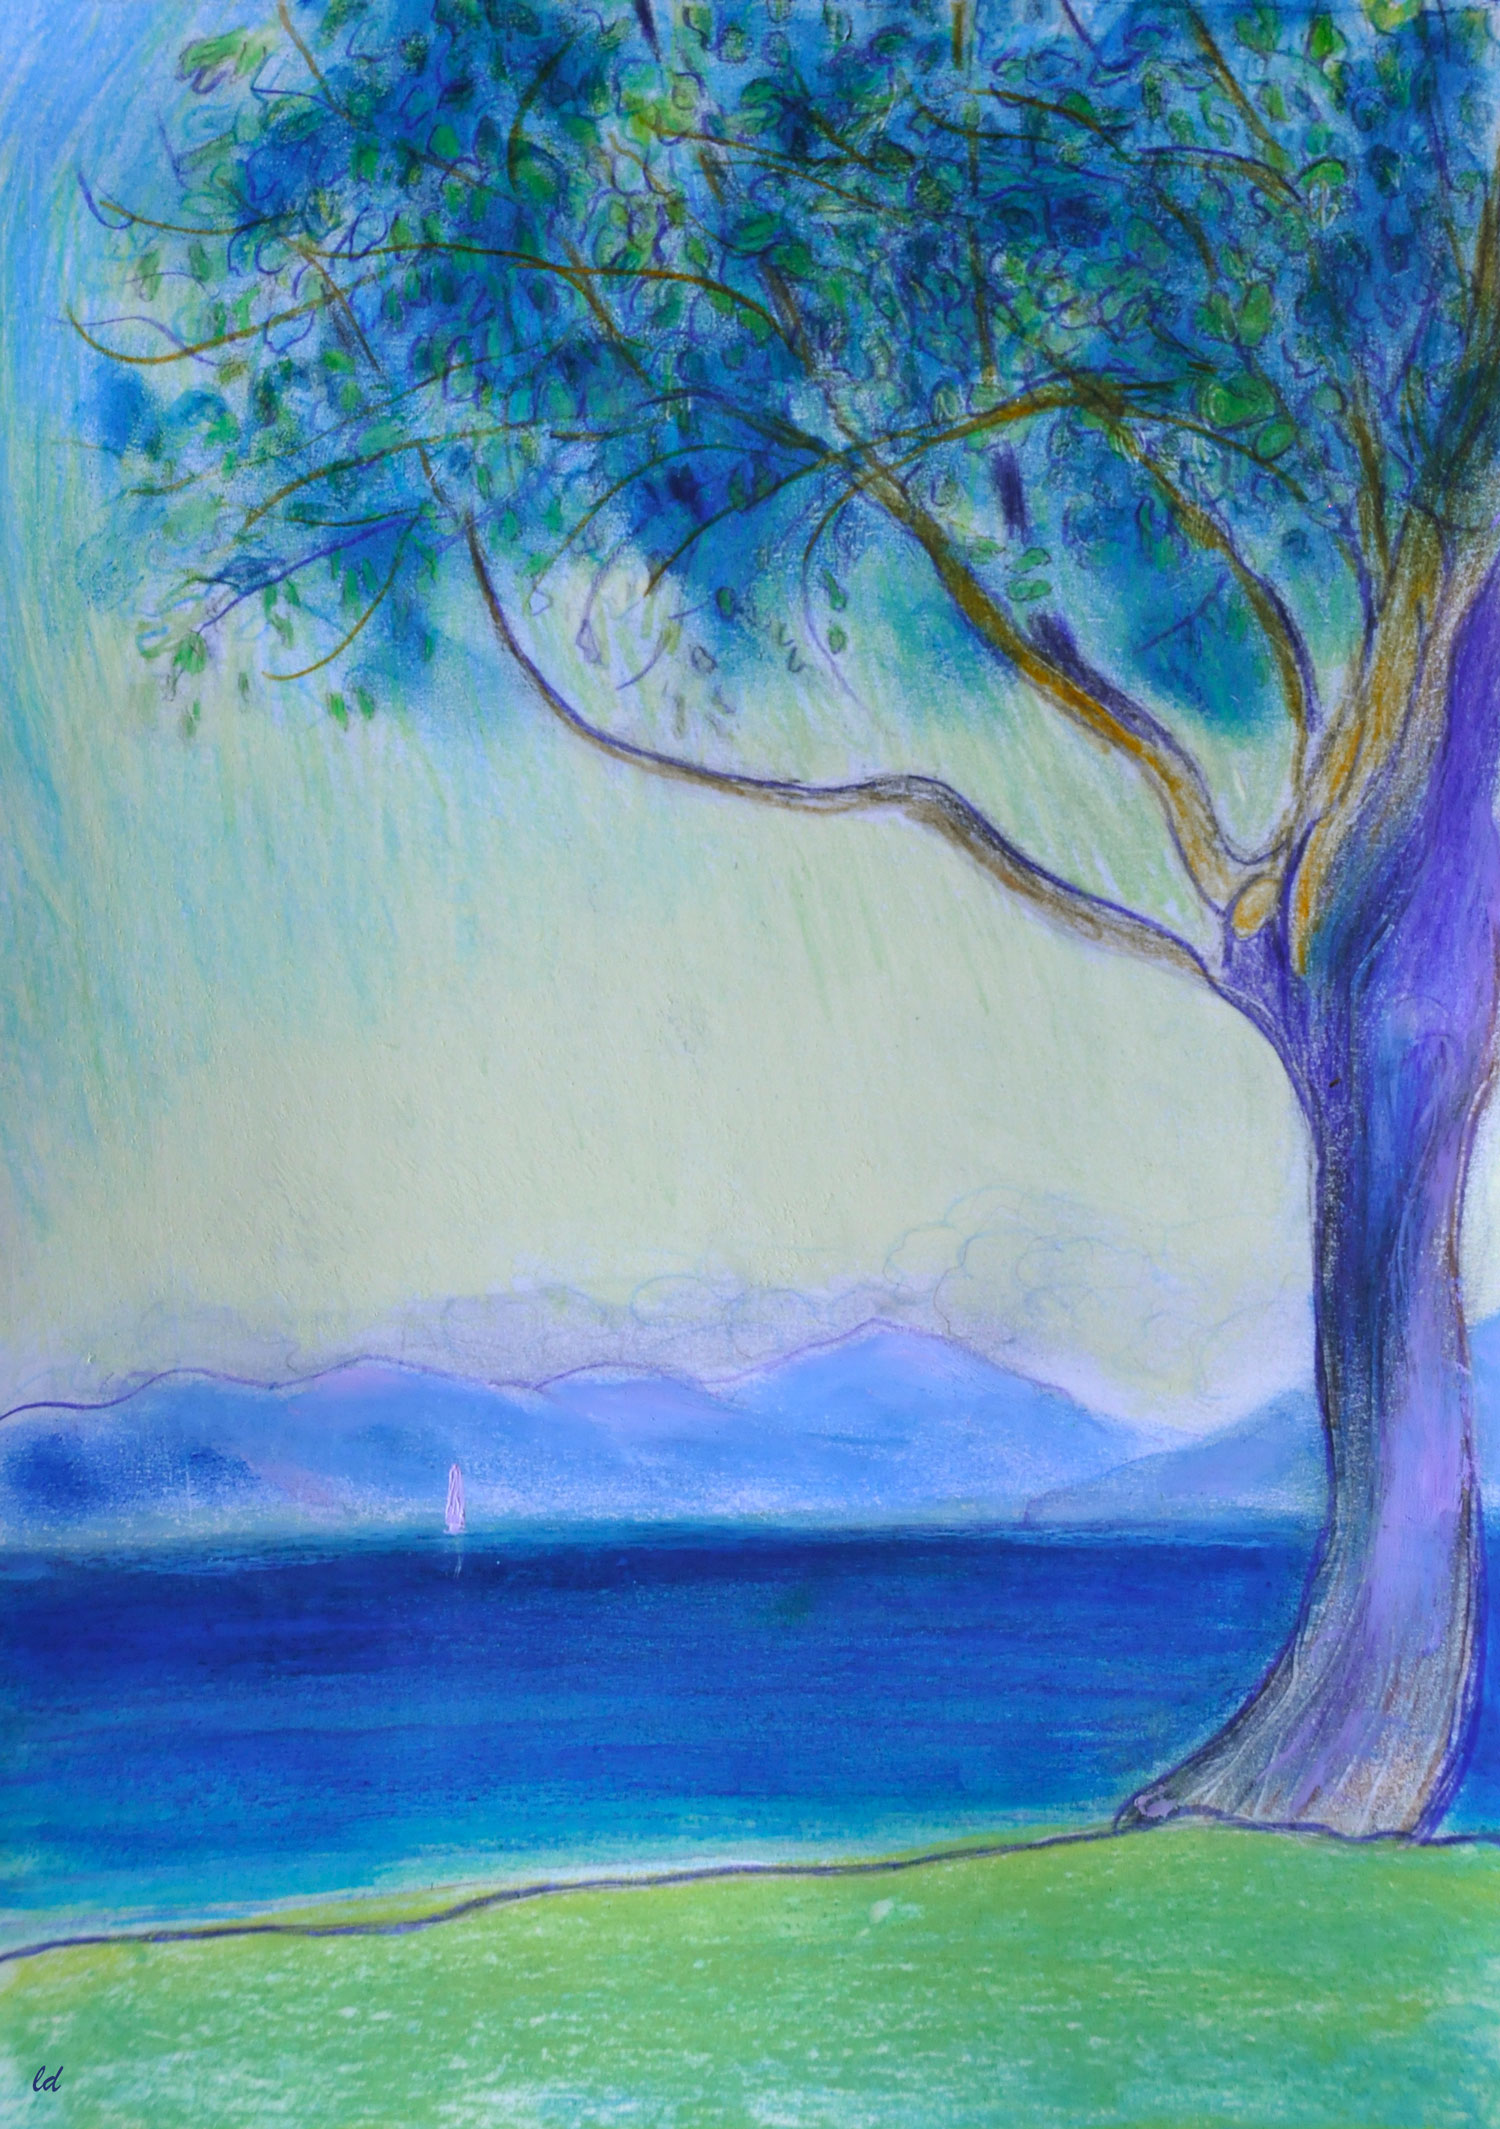 Lac Léman, St Prex 30. Crayon de couleur, pastel et huile sur papier, 29x21, 2021